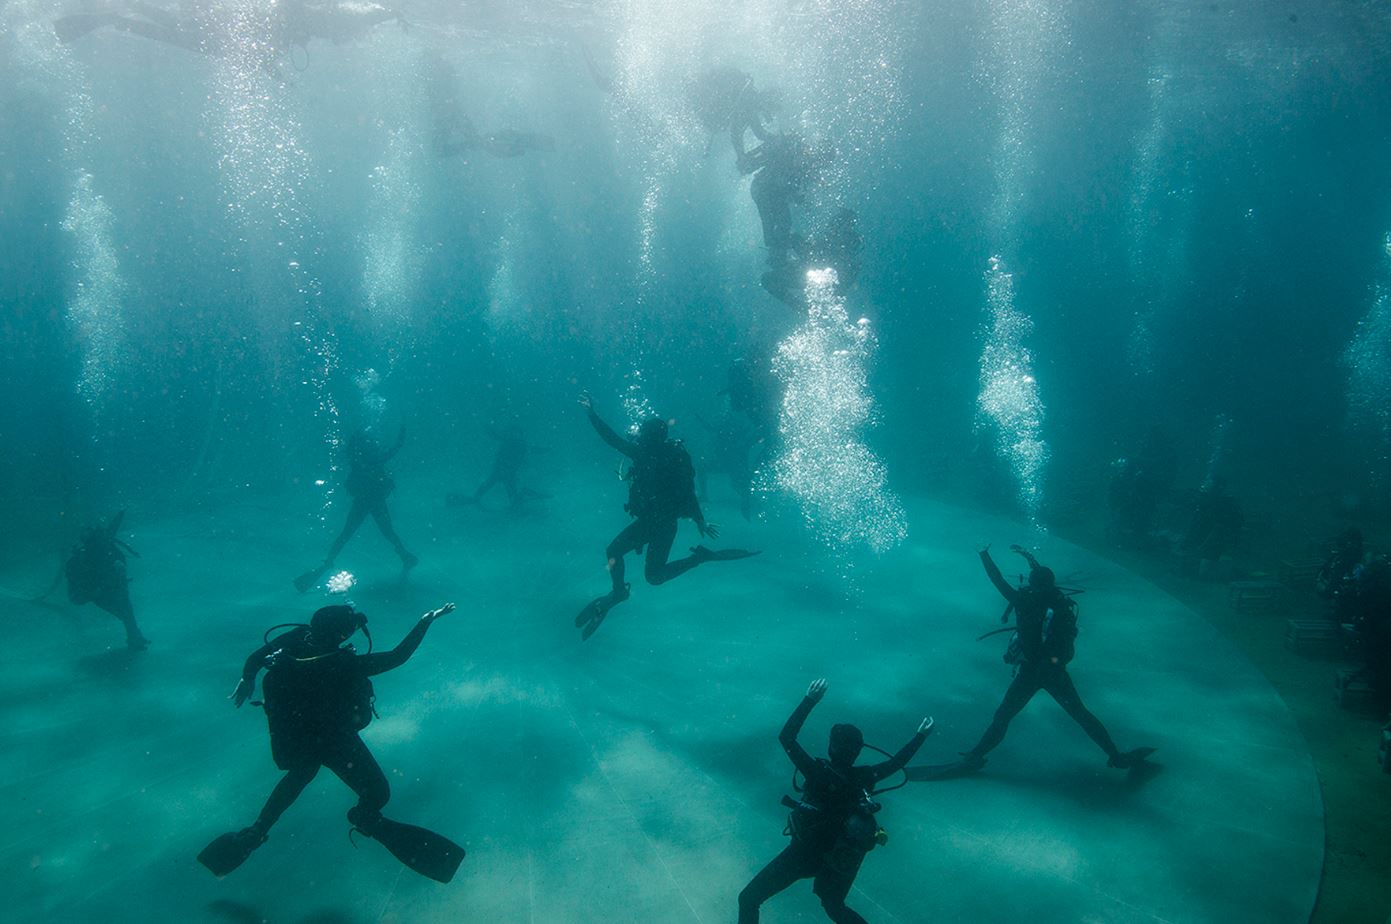 Υποβρύχια χορευτική παράσταση στο Σούνιο – ΦΩΤΟ